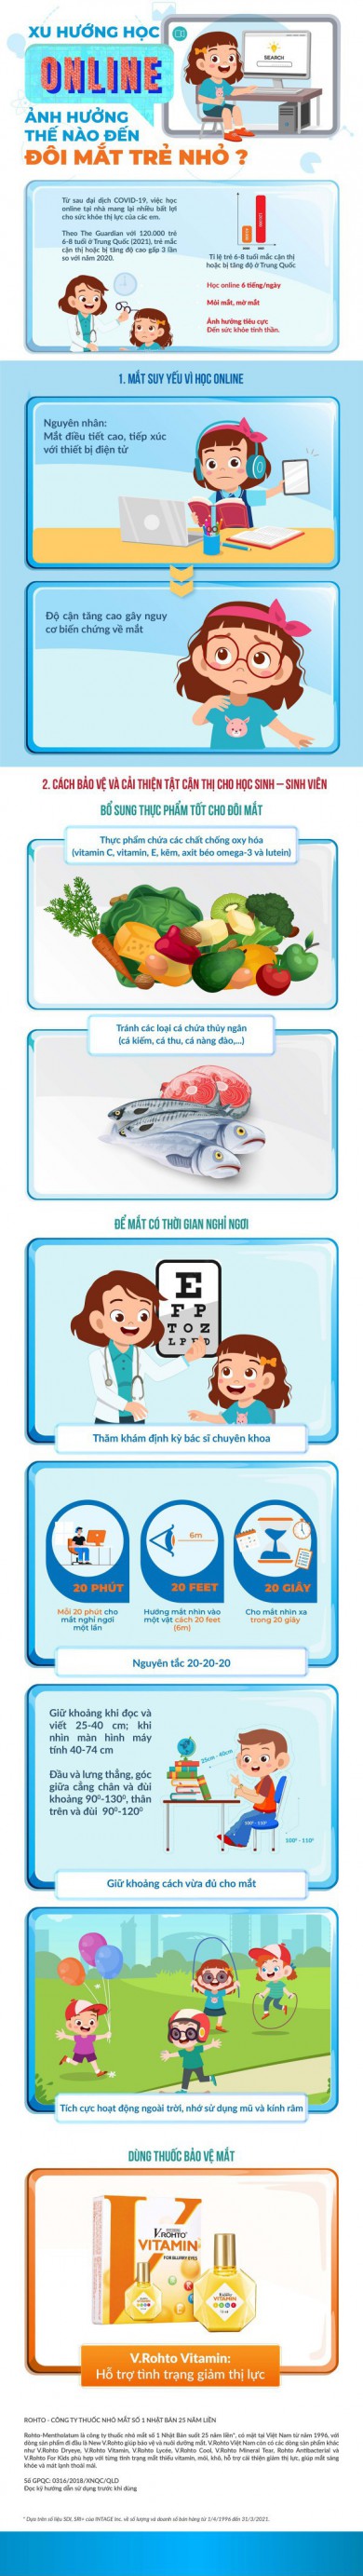 Infographic Xu hướng học online ảnh hưởng thế nào đến đôi mắt trẻ nhỏ?